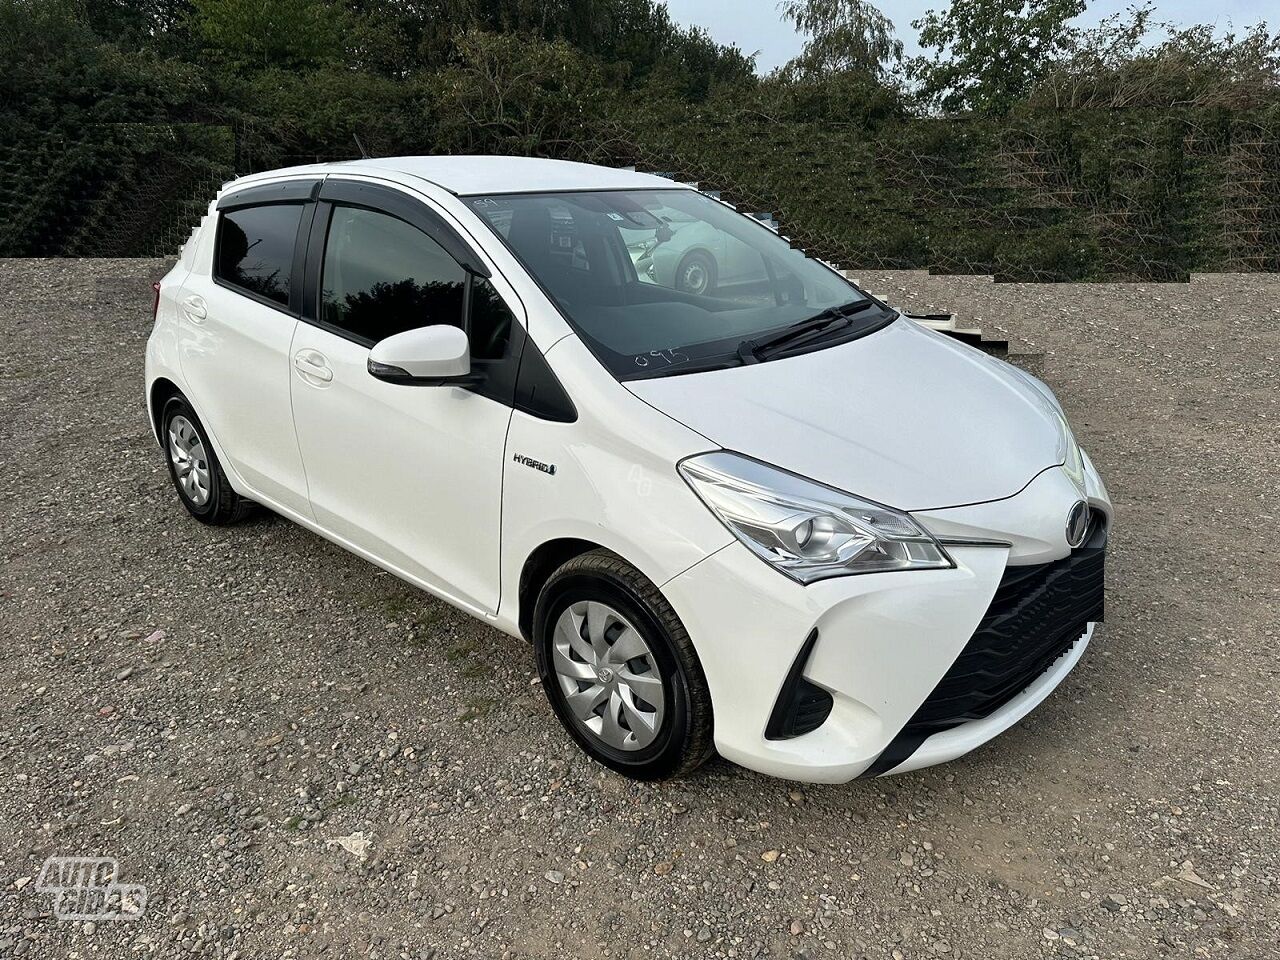 Toyota Yaris 2019 г запчясти